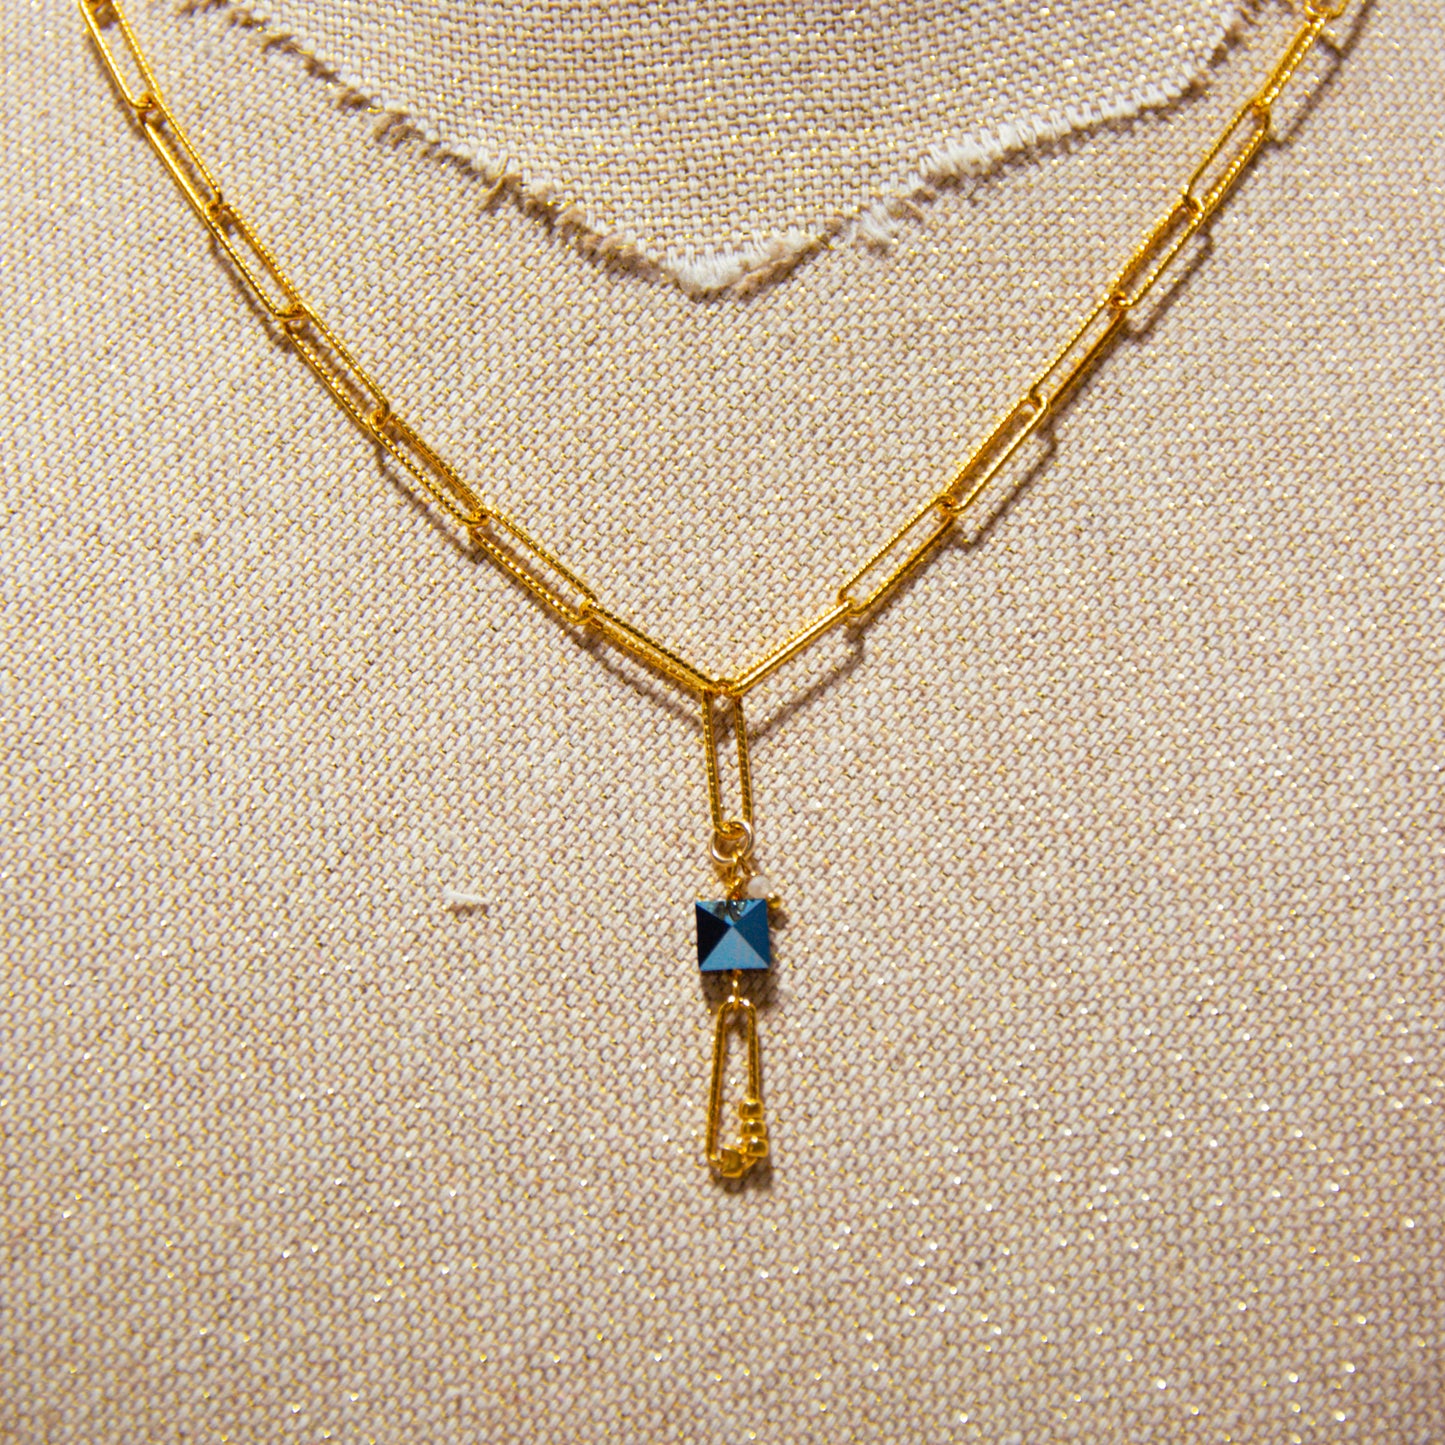 Swarovski Crystal Big Links Chain Necklace